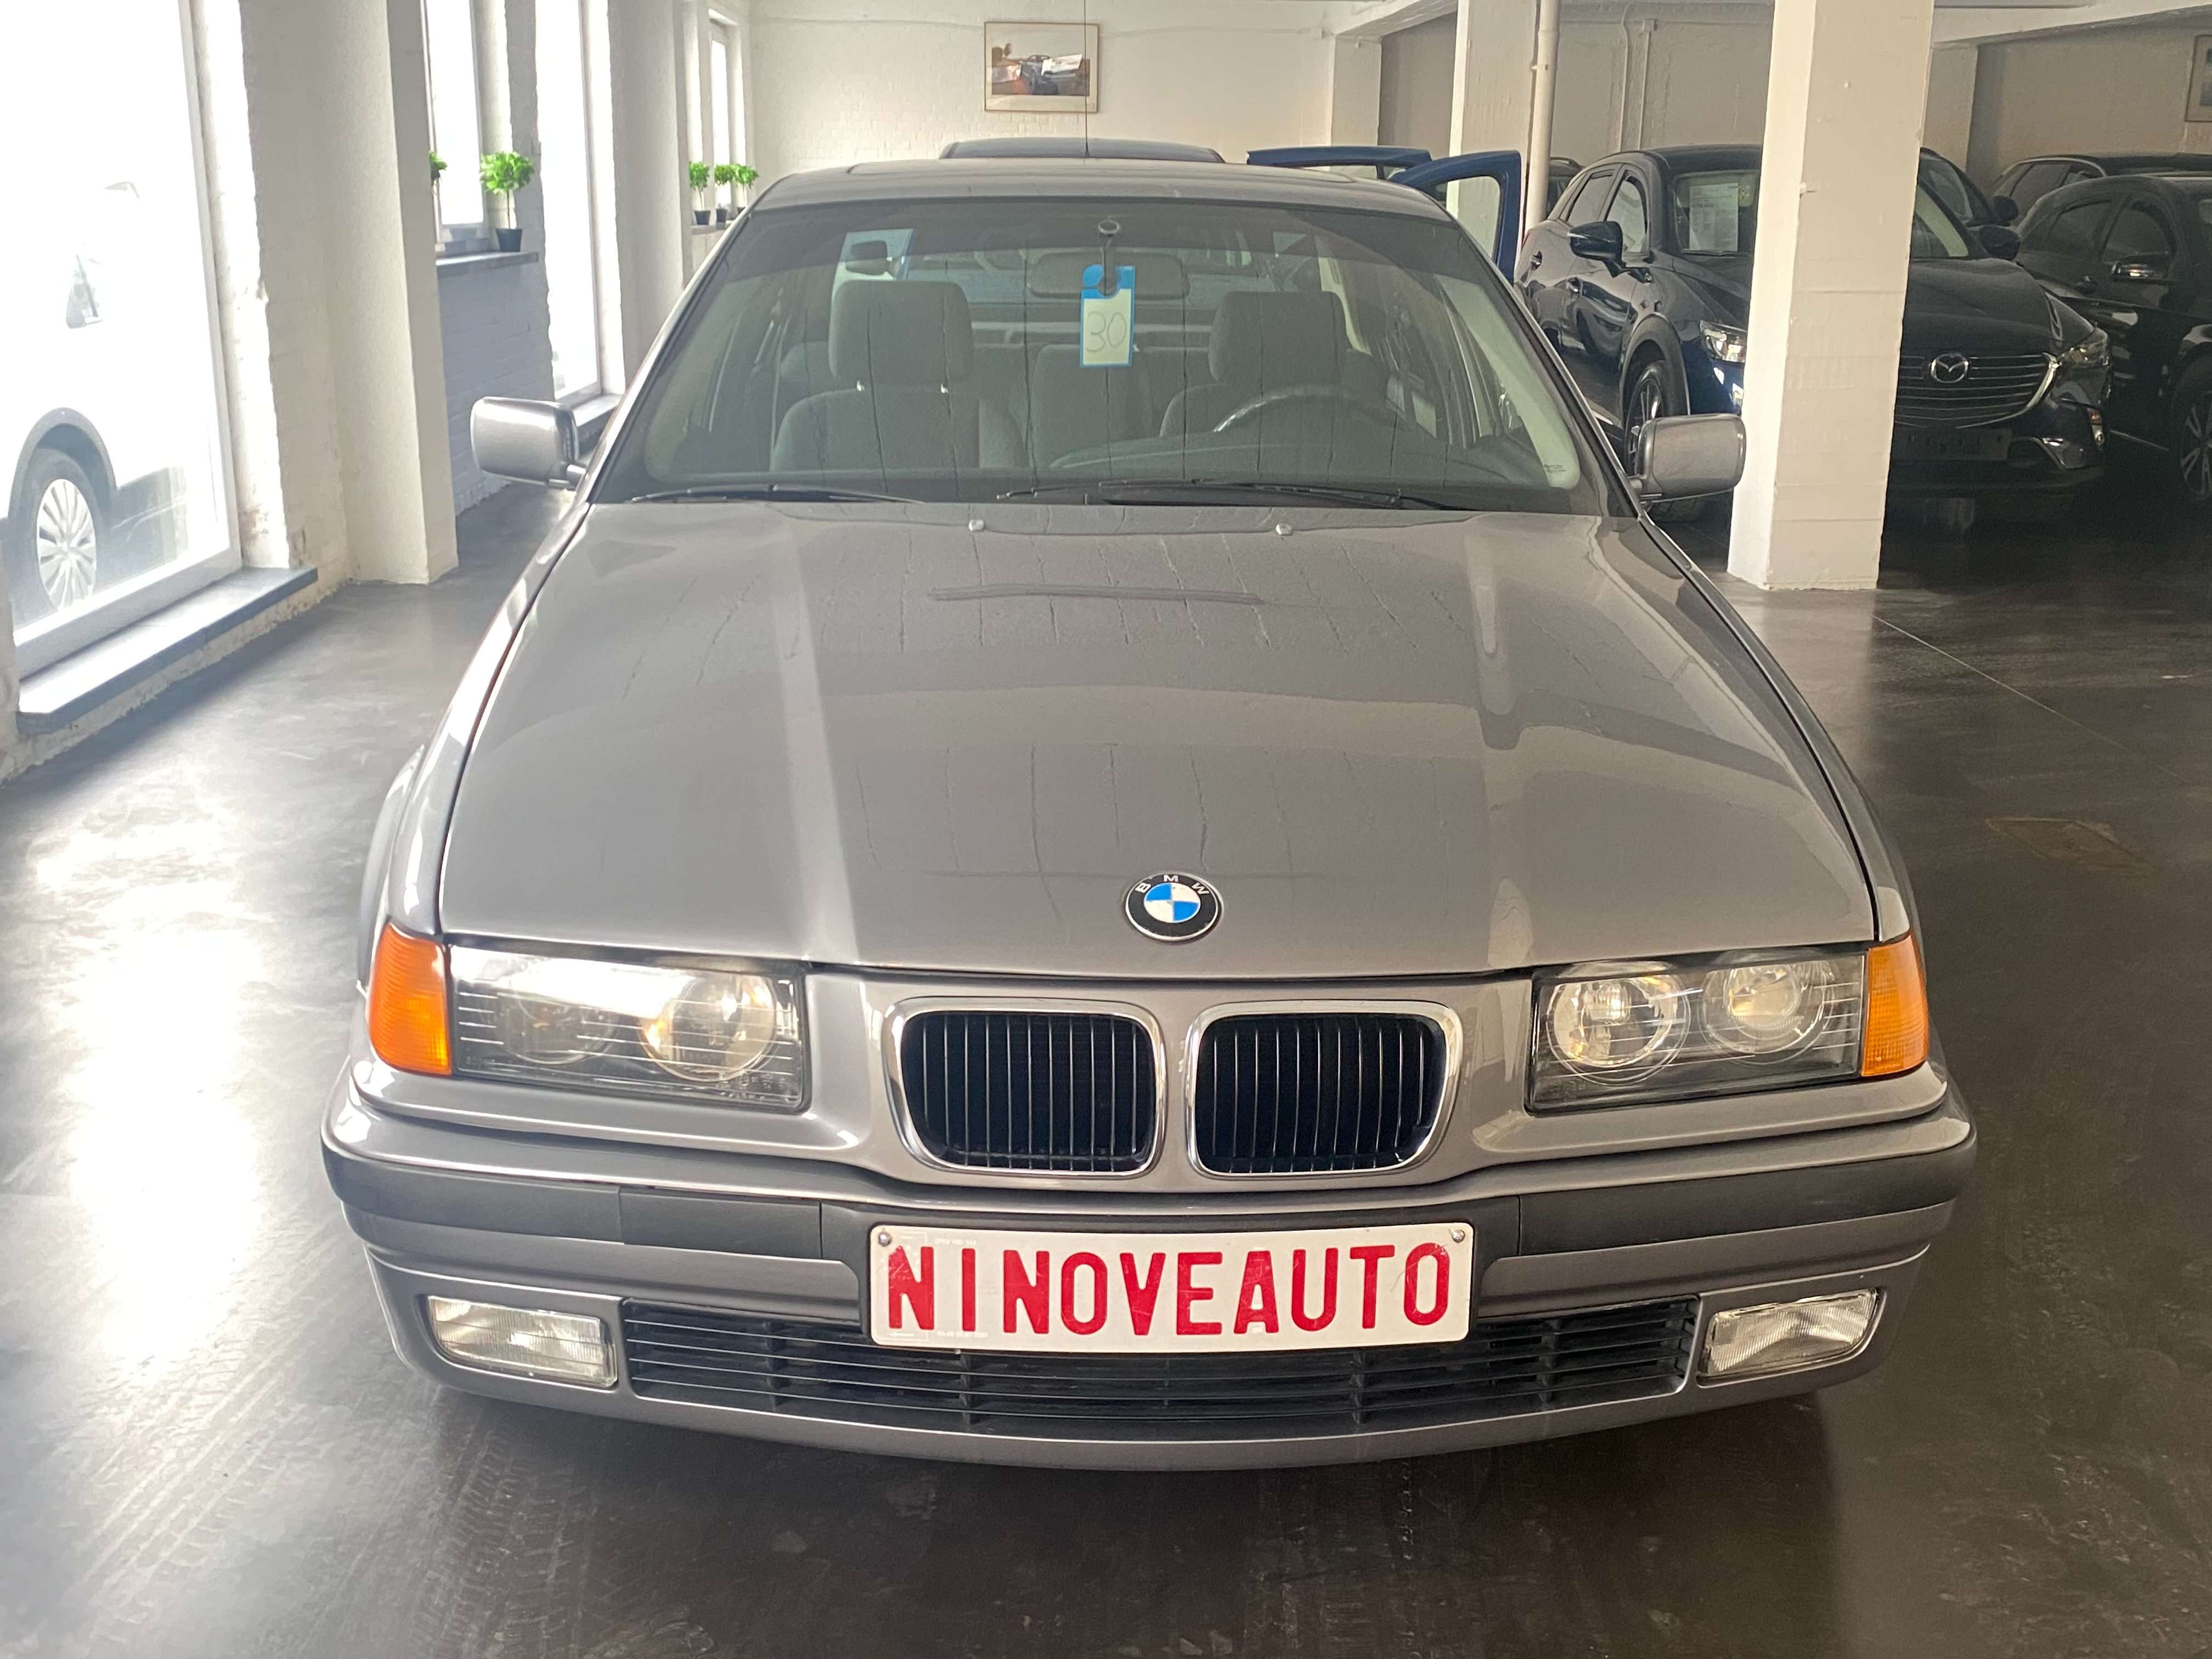 Ninove auto - BMW 318